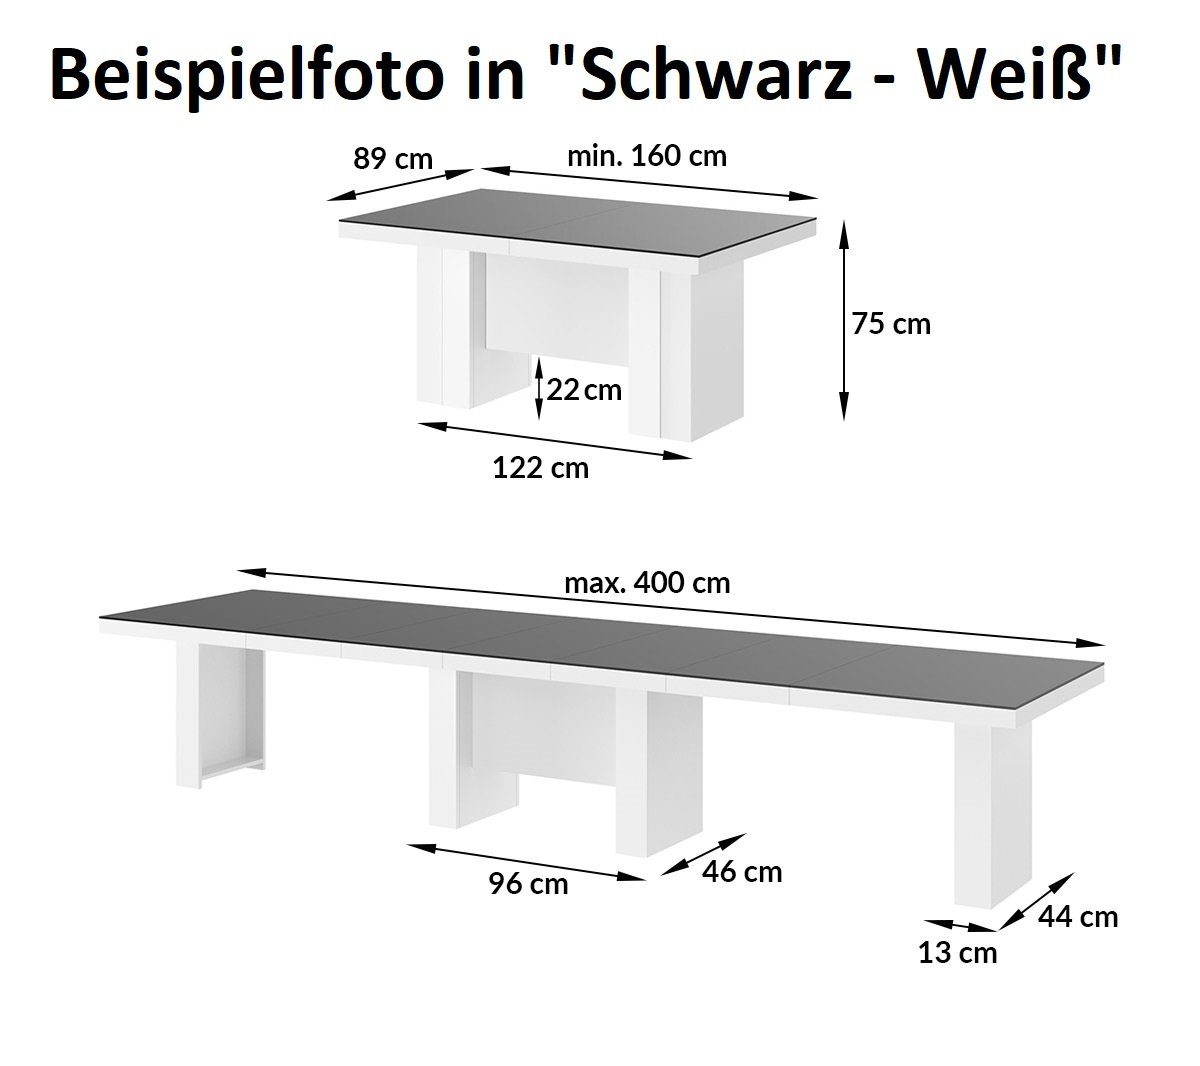 designimpex Esstisch Design Esstisch Tisch bis Hochglanz XXL - ausziehbar Eiche HLA-111 Weiß Hochglanz 400 cm 160 Natur